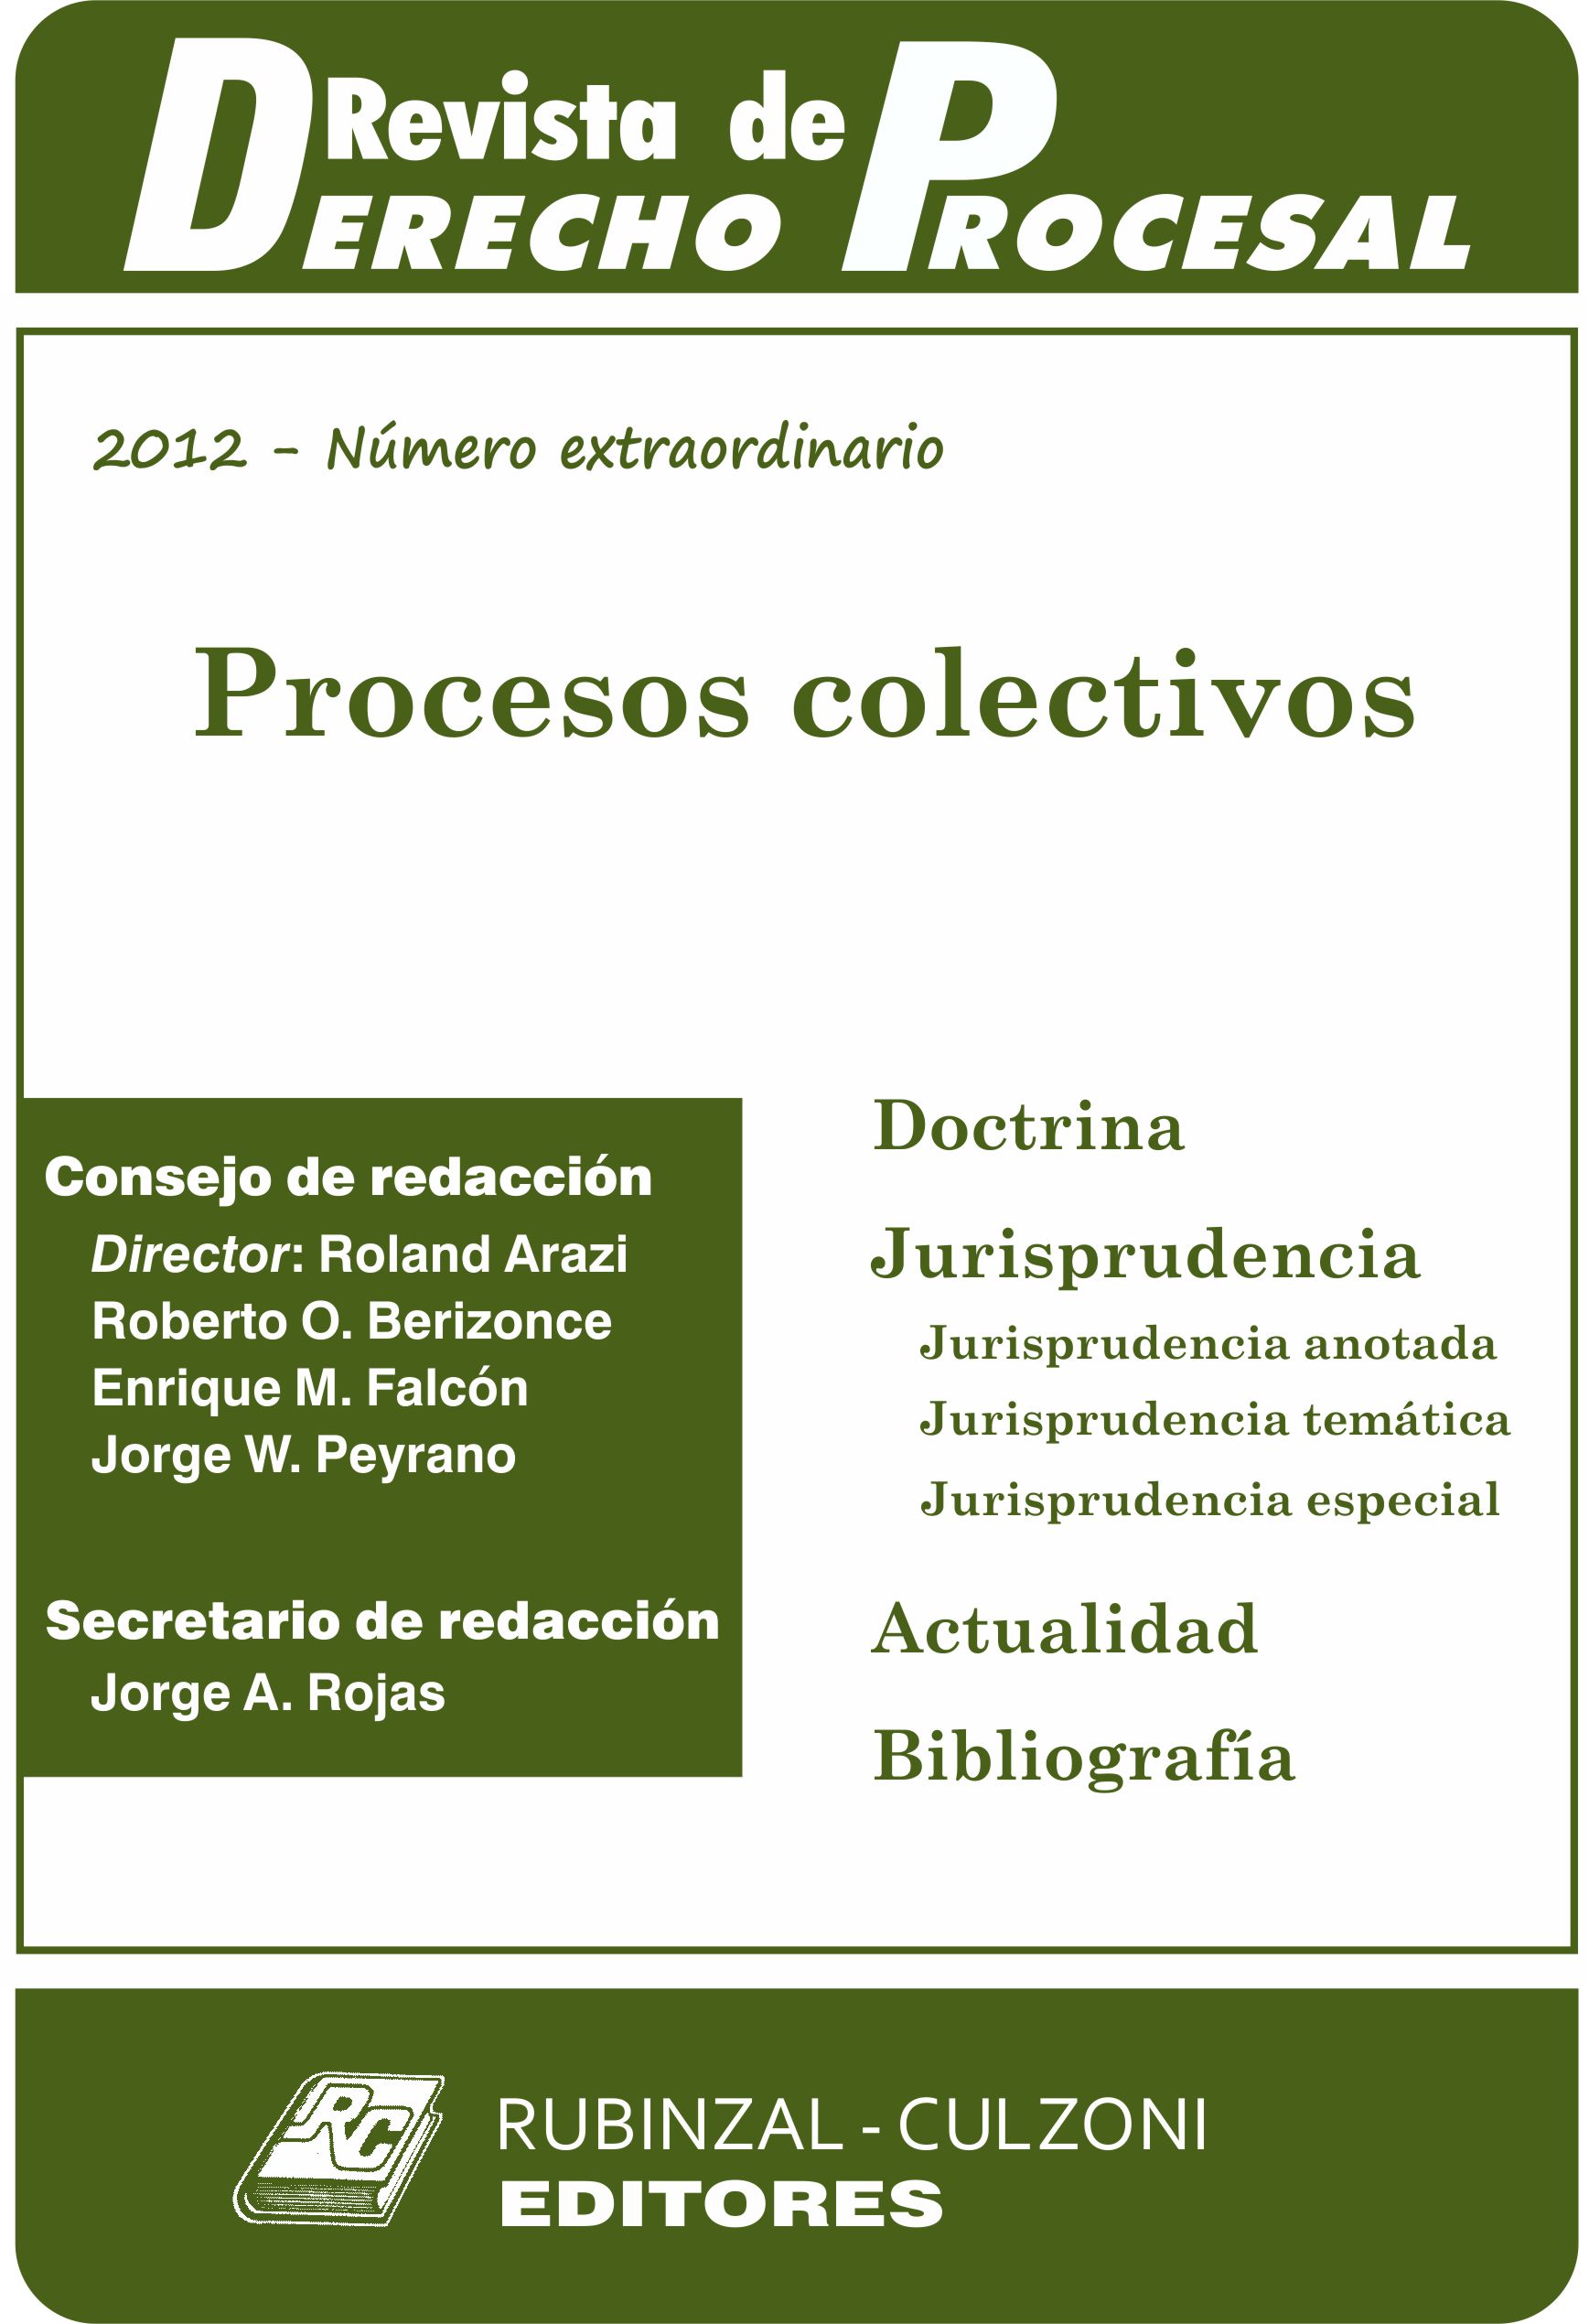 Revista de Derecho Procesal - Número extraordinario - Procesos colectivos.